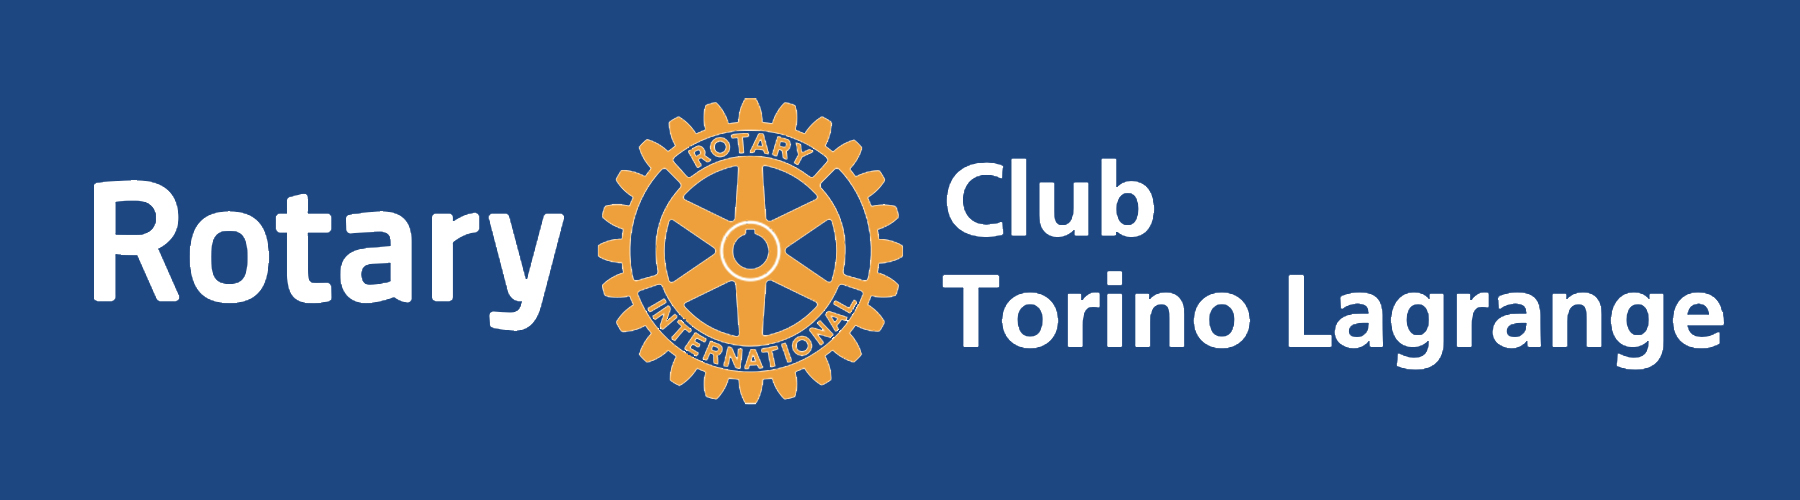 Rotary Club Lagrange e Fondazione Crescere inseme al Sant’anna